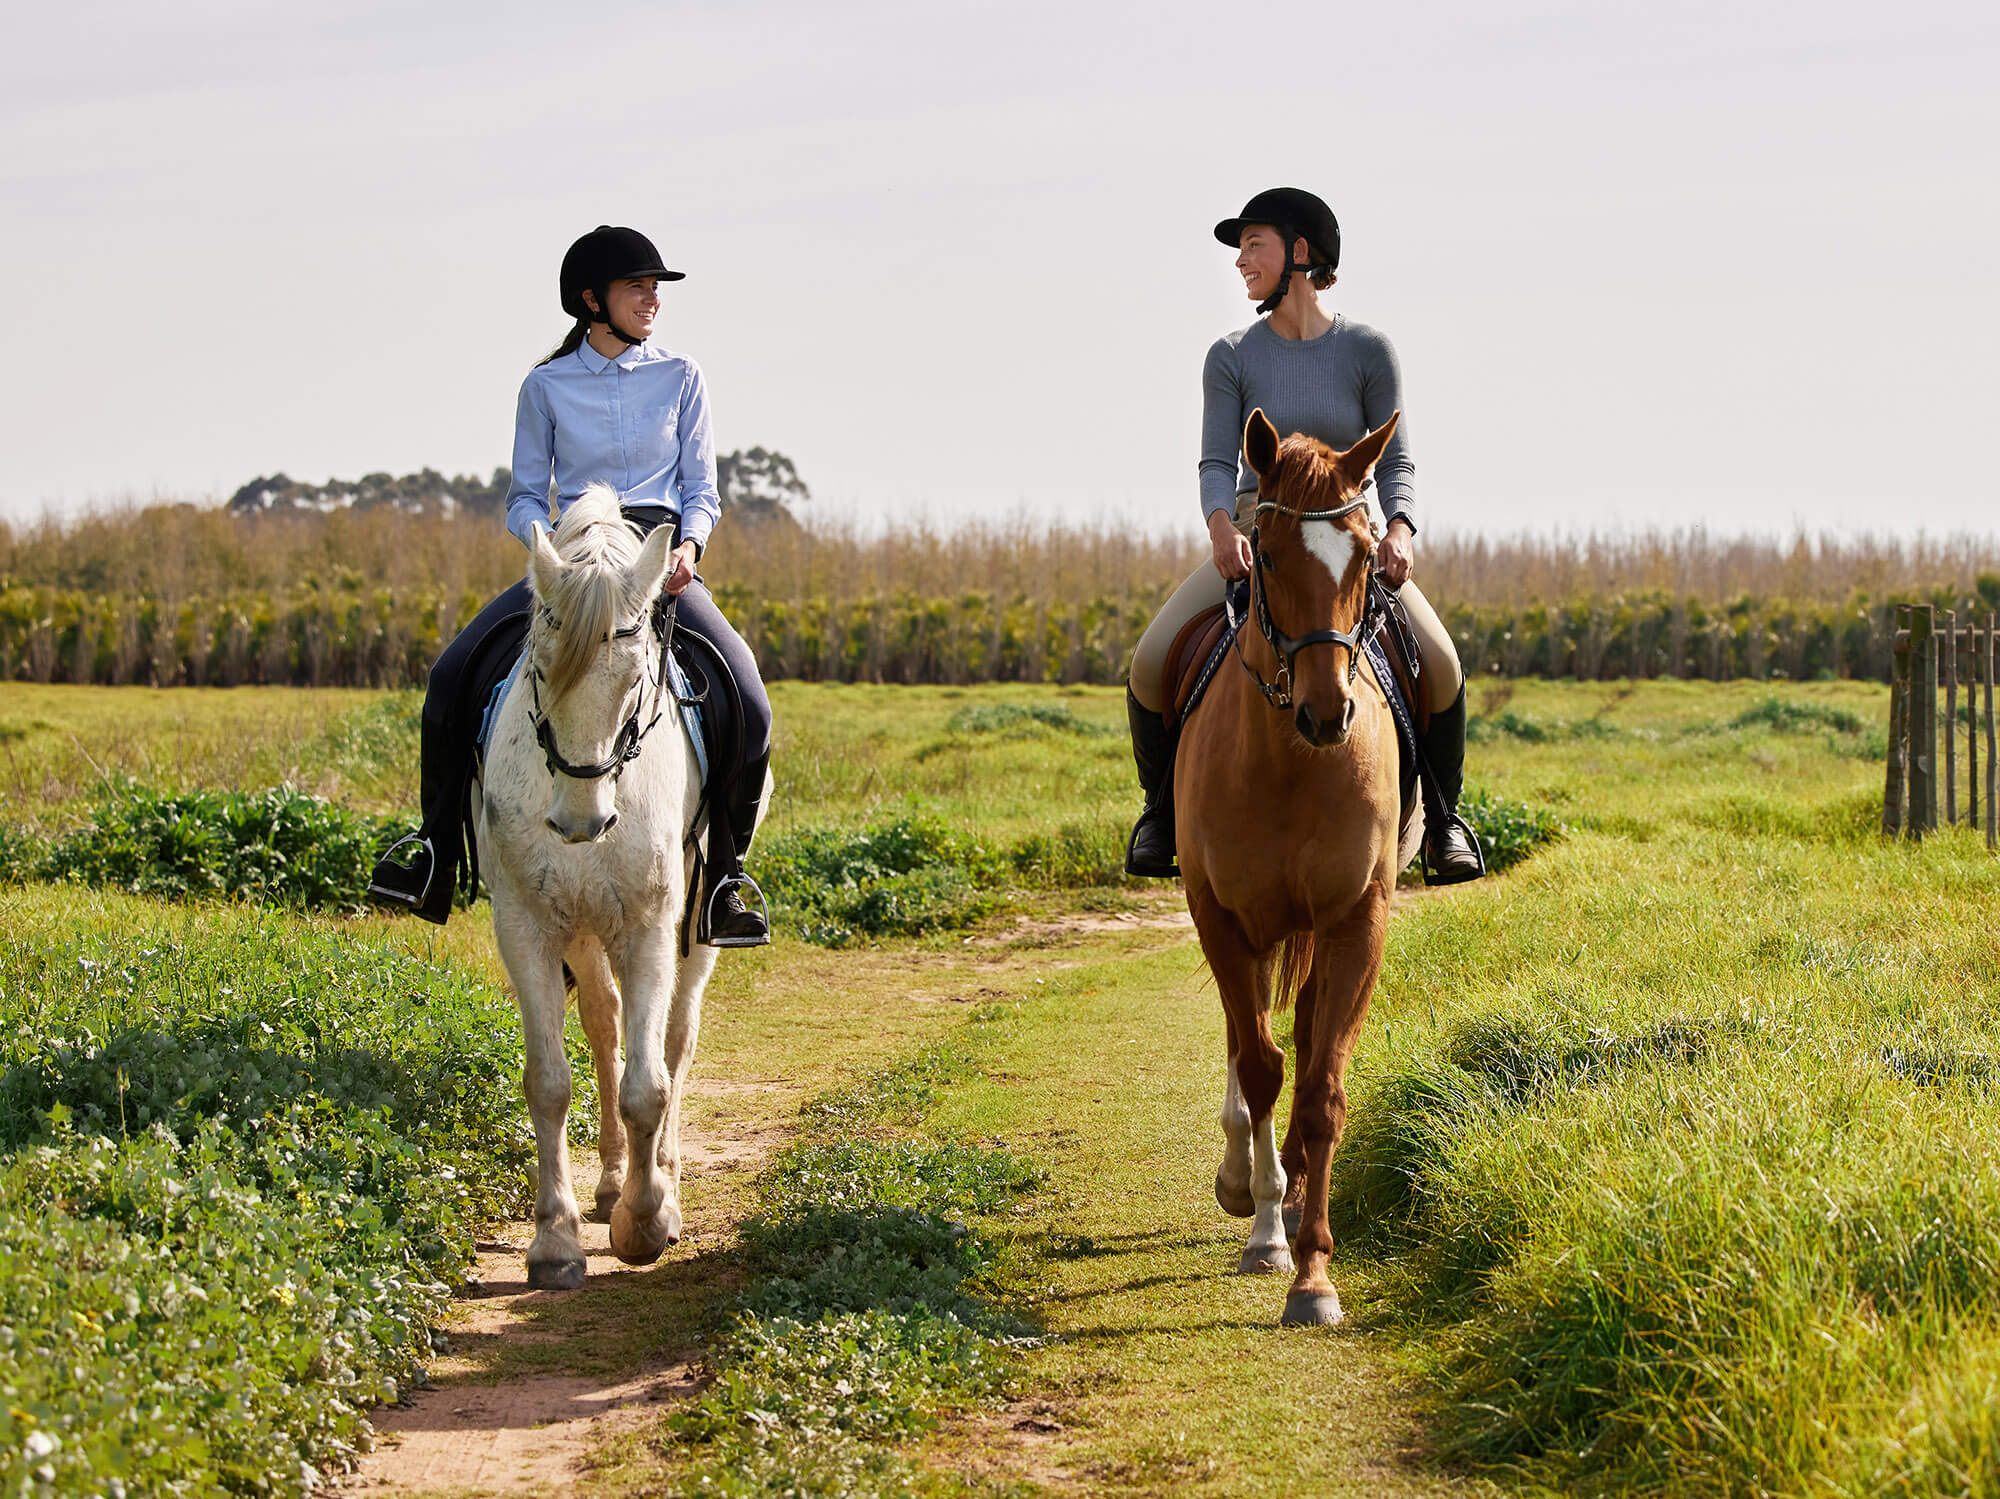 Ziel ist es, den Naturpark für Reiterinnen und Reiter ganzheitlich erlebbar und attraktiv zu machen. Foto: iStock/Peopleimages